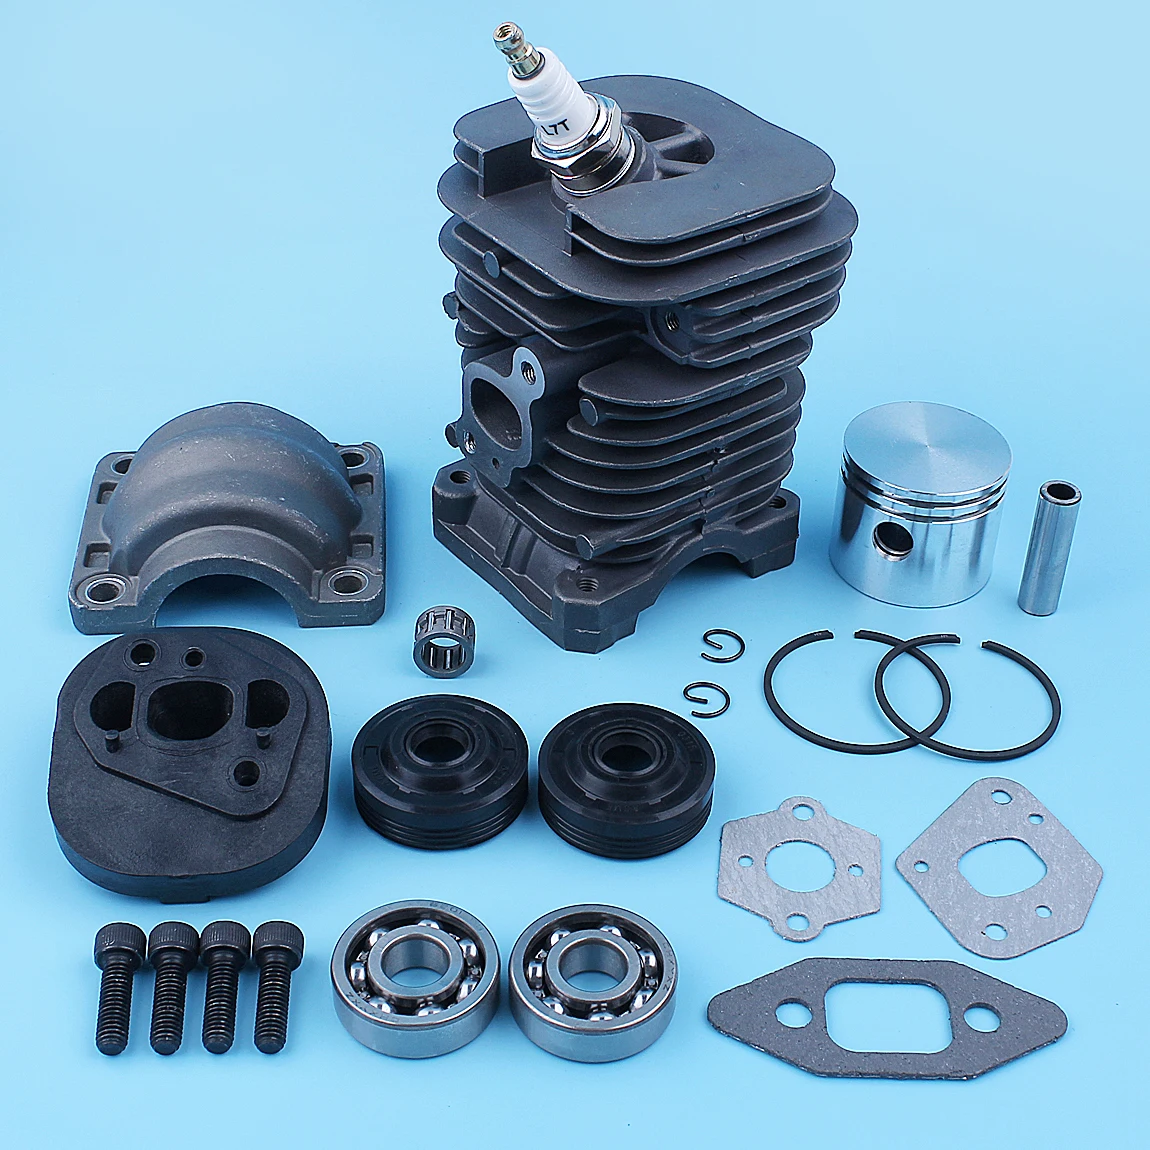 

Nikasil Cylinder Piston Crank Bearing Seal Gasket Kit For Poulan PP220 PP221 PP260 1950 2150 2250 2450 2550 SM4018 Chainsaw 41mm